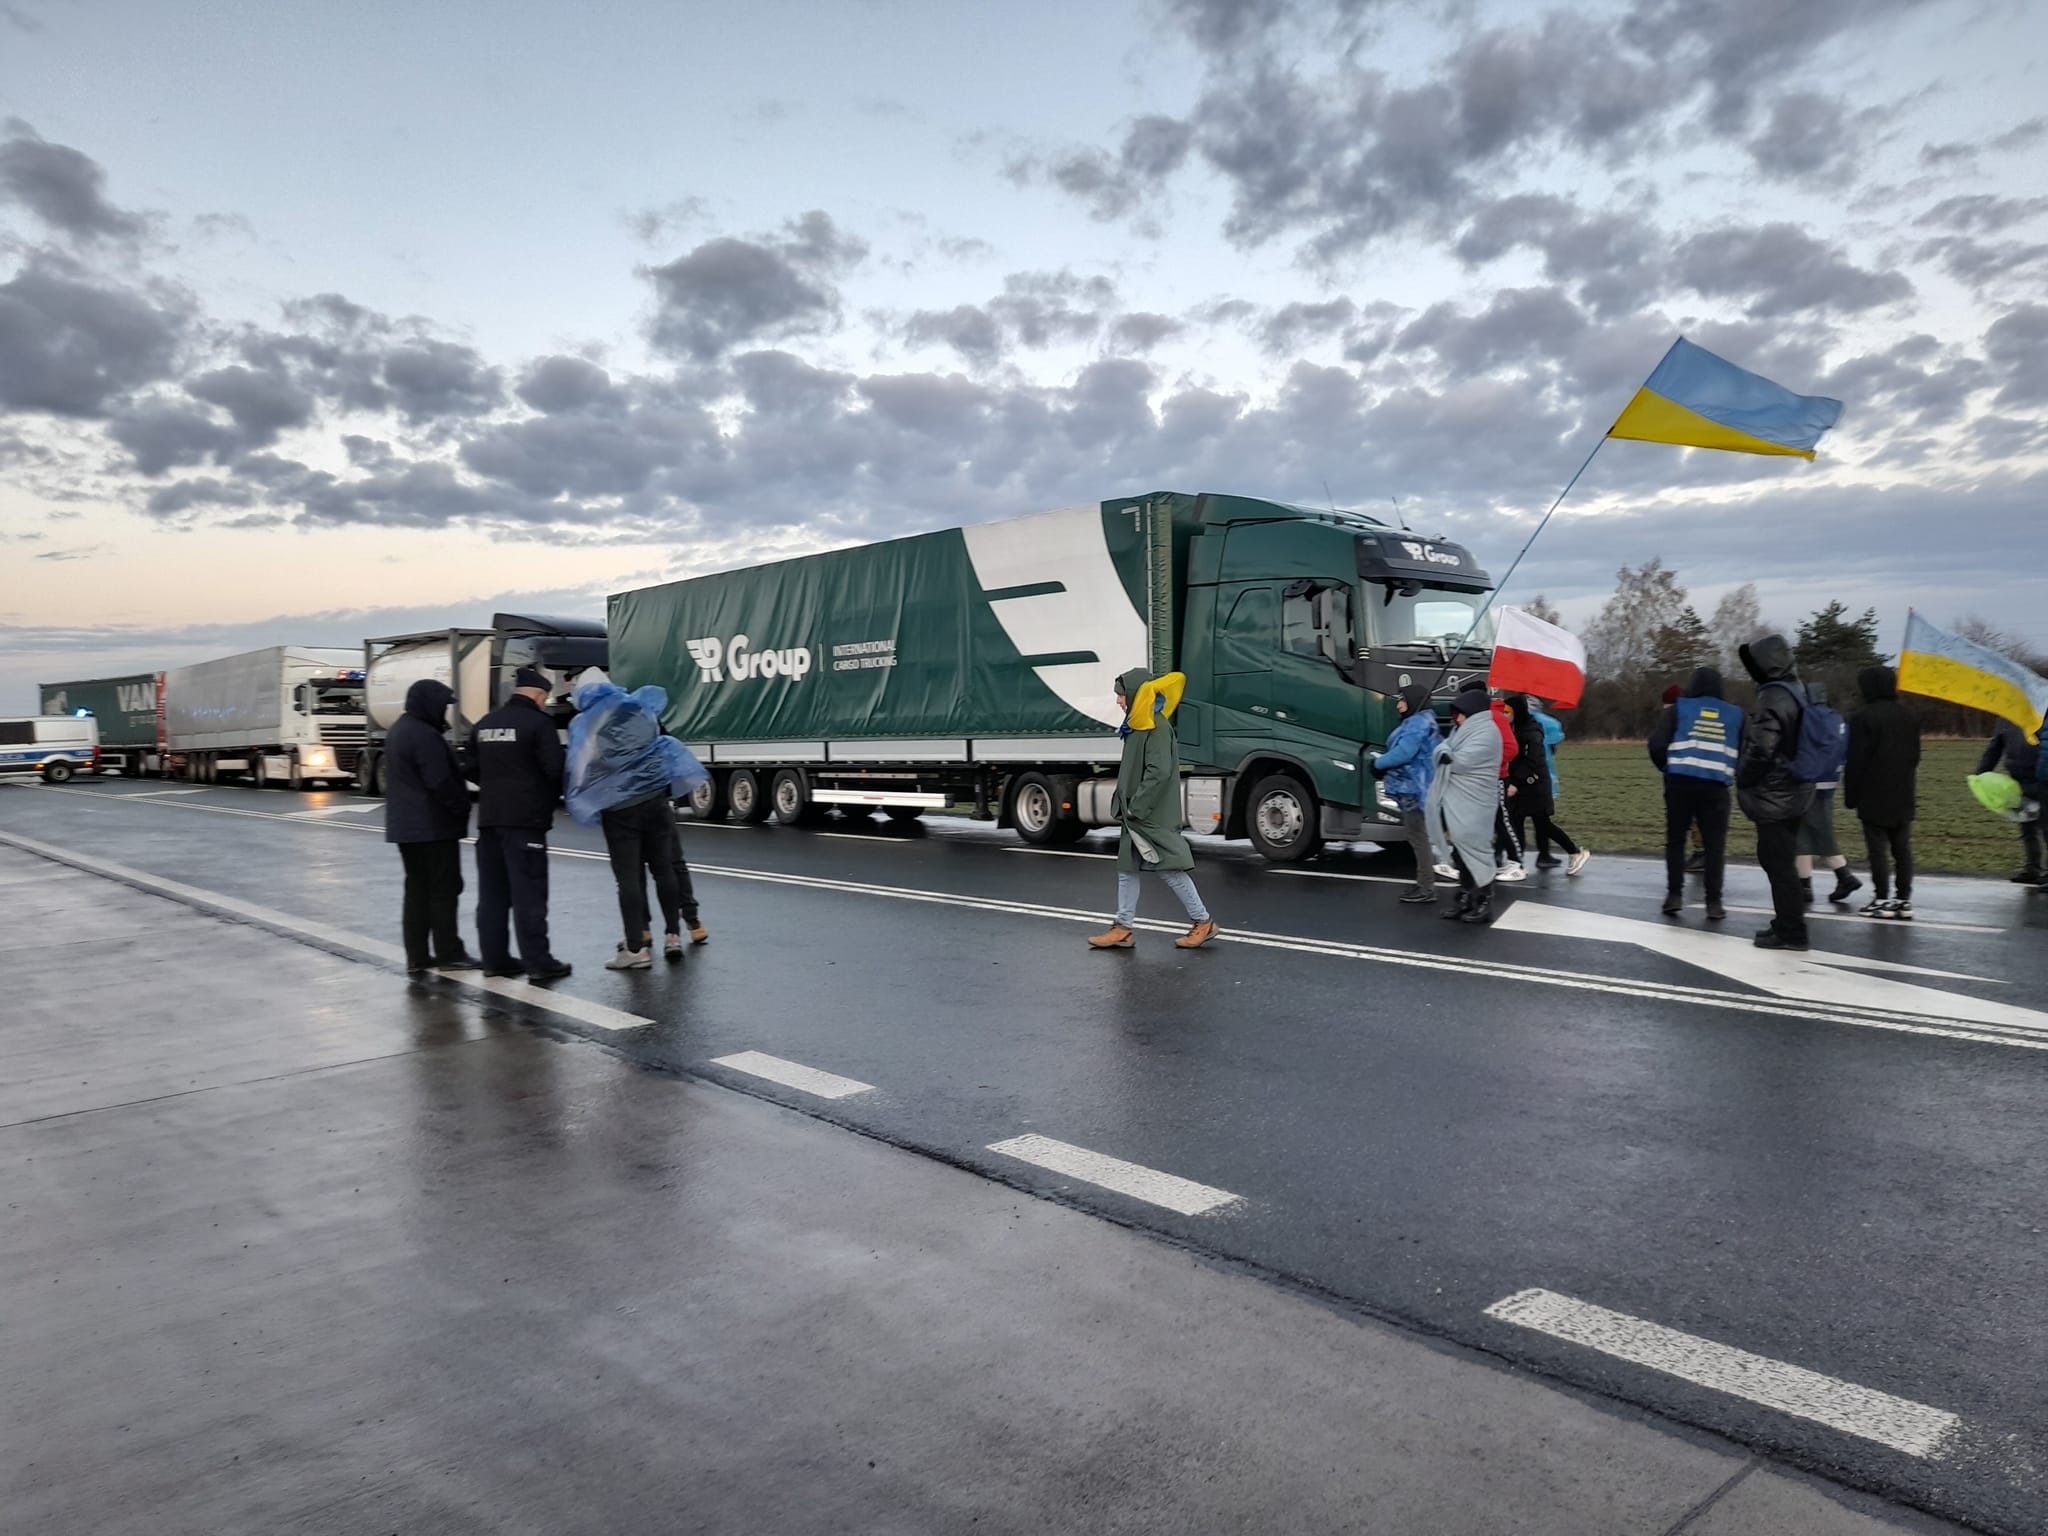 Trwa blokada przejścia granicznego. Aktywistów przybywa, wśród kierowców coraz większe zdenerwowanie (zdjęcia)